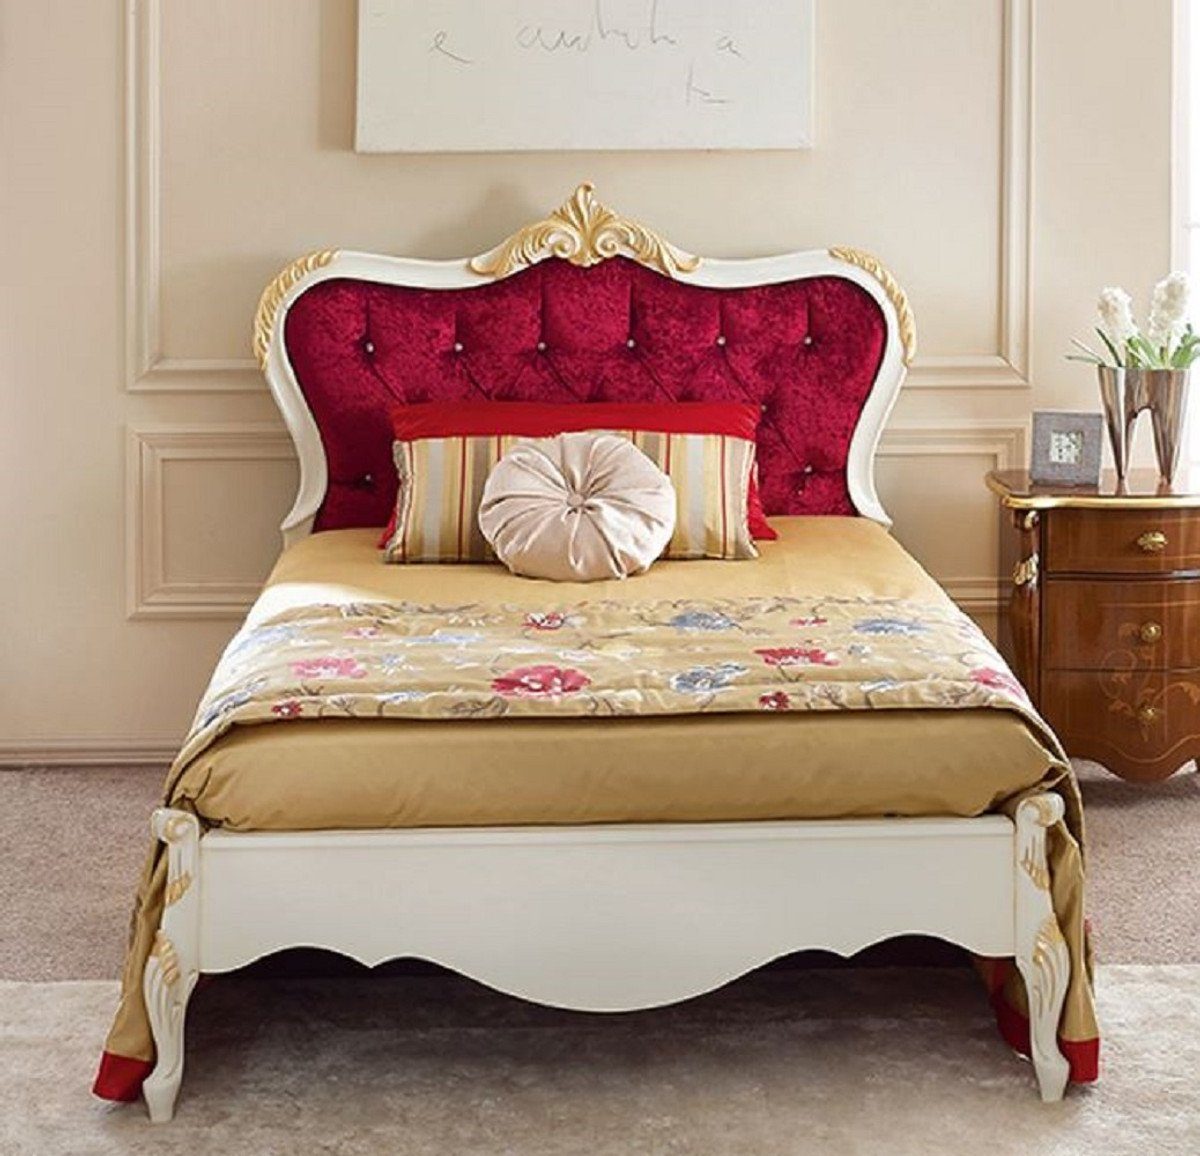 Casa Padrino Bett Doppelbett Bordeauxrot / Weiß / Gold - Prunkvolles  Massivholz Bett - Schlafzimmer Möbel - Qualität - Made in Italy